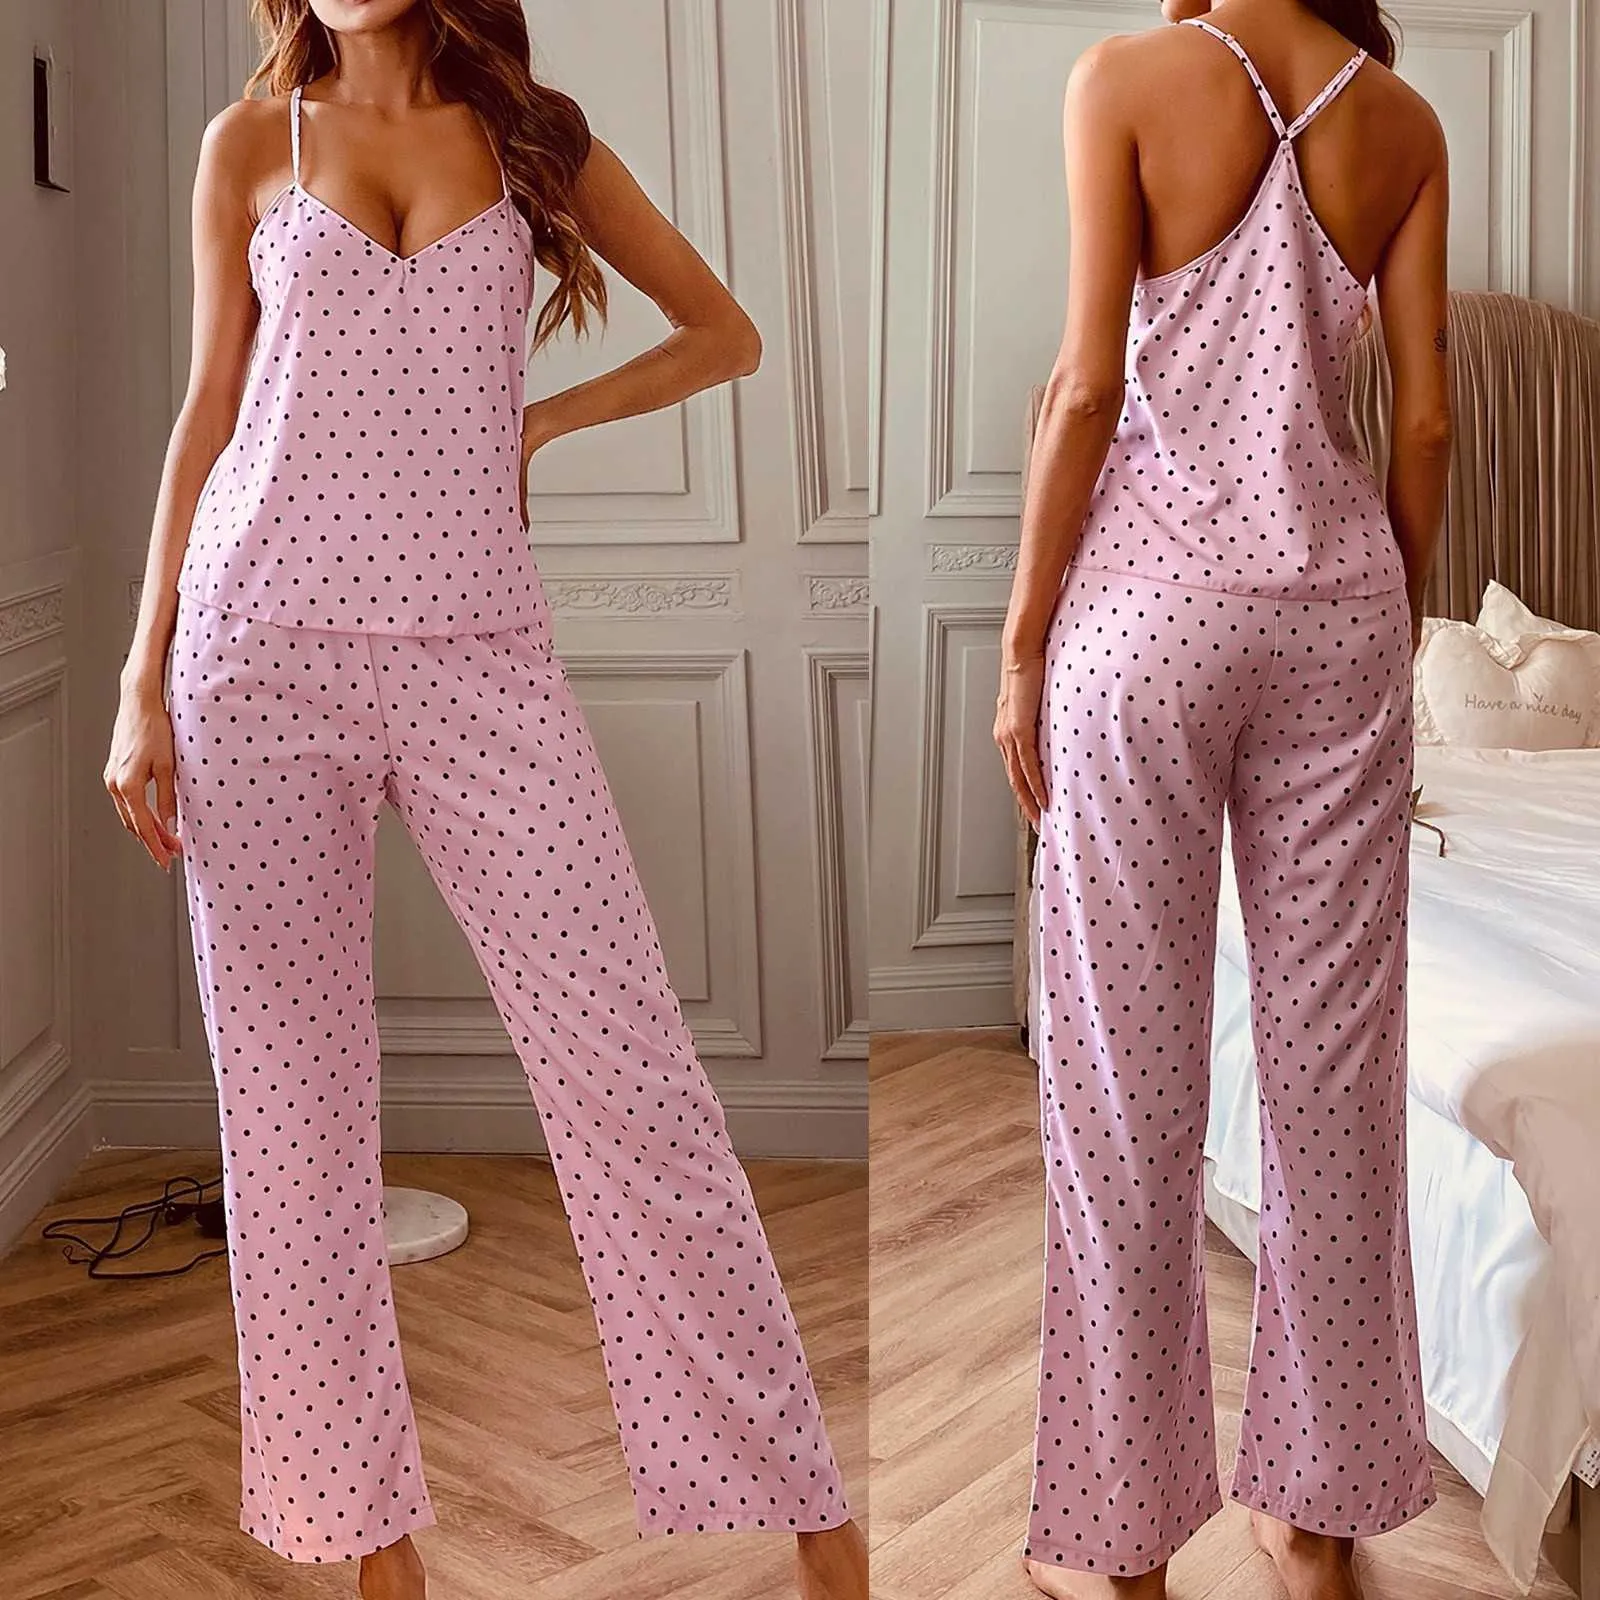 Spagetti Kayışı Pijama Baskı Yaz Iki Parçalı Set Üst Ve Pantolon Pijama Saten Kadınlar V Boyun Seksi Gecelikler Polka Dots Baskı Q0706